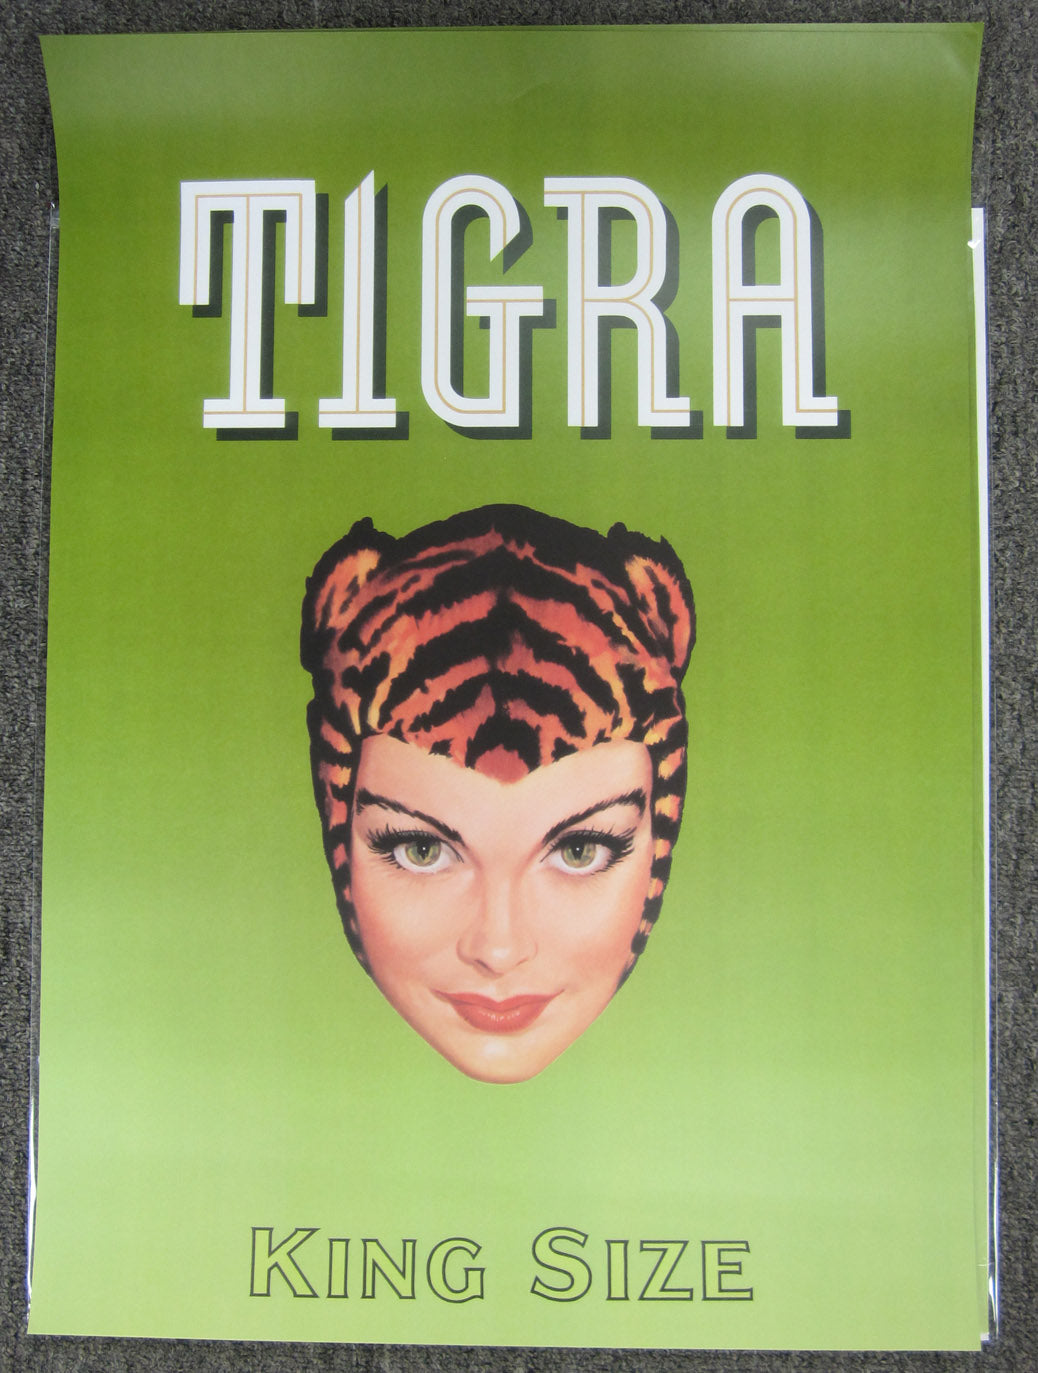 Tigra King Size - Advertising Poster